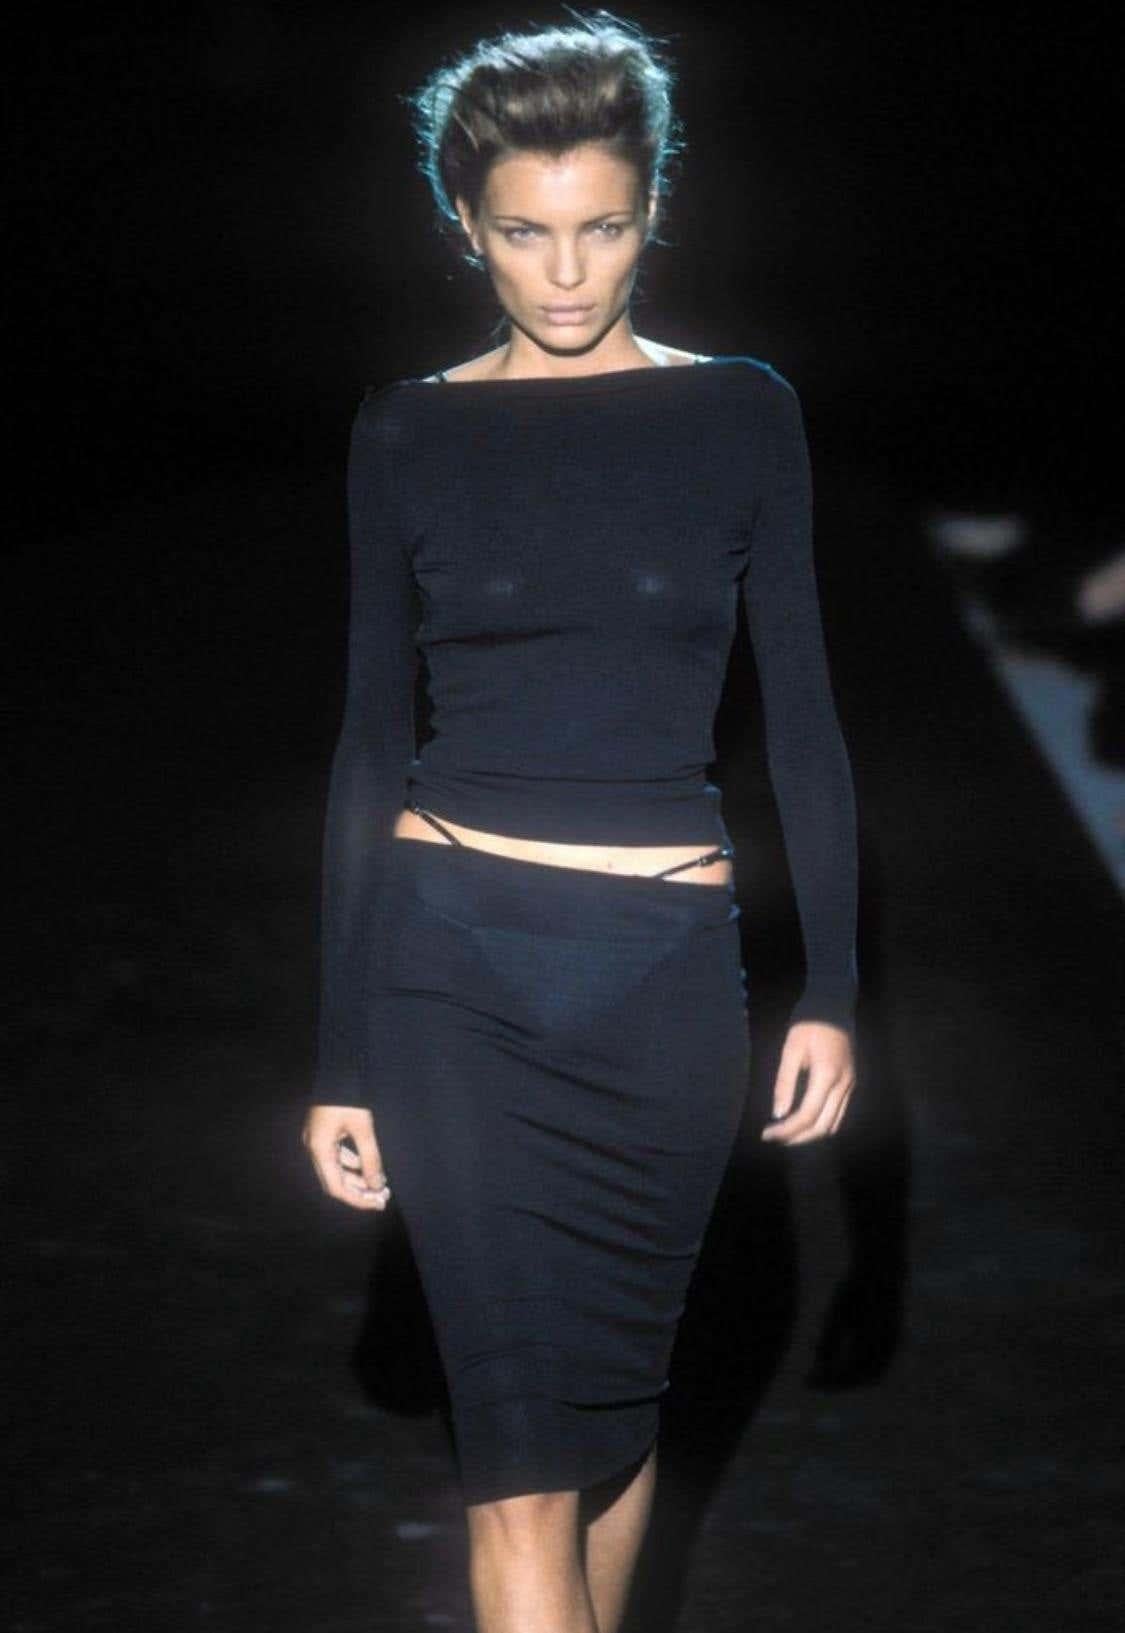 Die Präsentation eines der ikonischsten Designs von Tom Ford bei Gucci. Dieses atemberaubende langärmelige Oberteil kann auf zwei Arten getragen werden: mit offenem Rücken oder mit einem U-Ausschnitt (ein Trend, den auch Bella Hadid trägt). Dieses